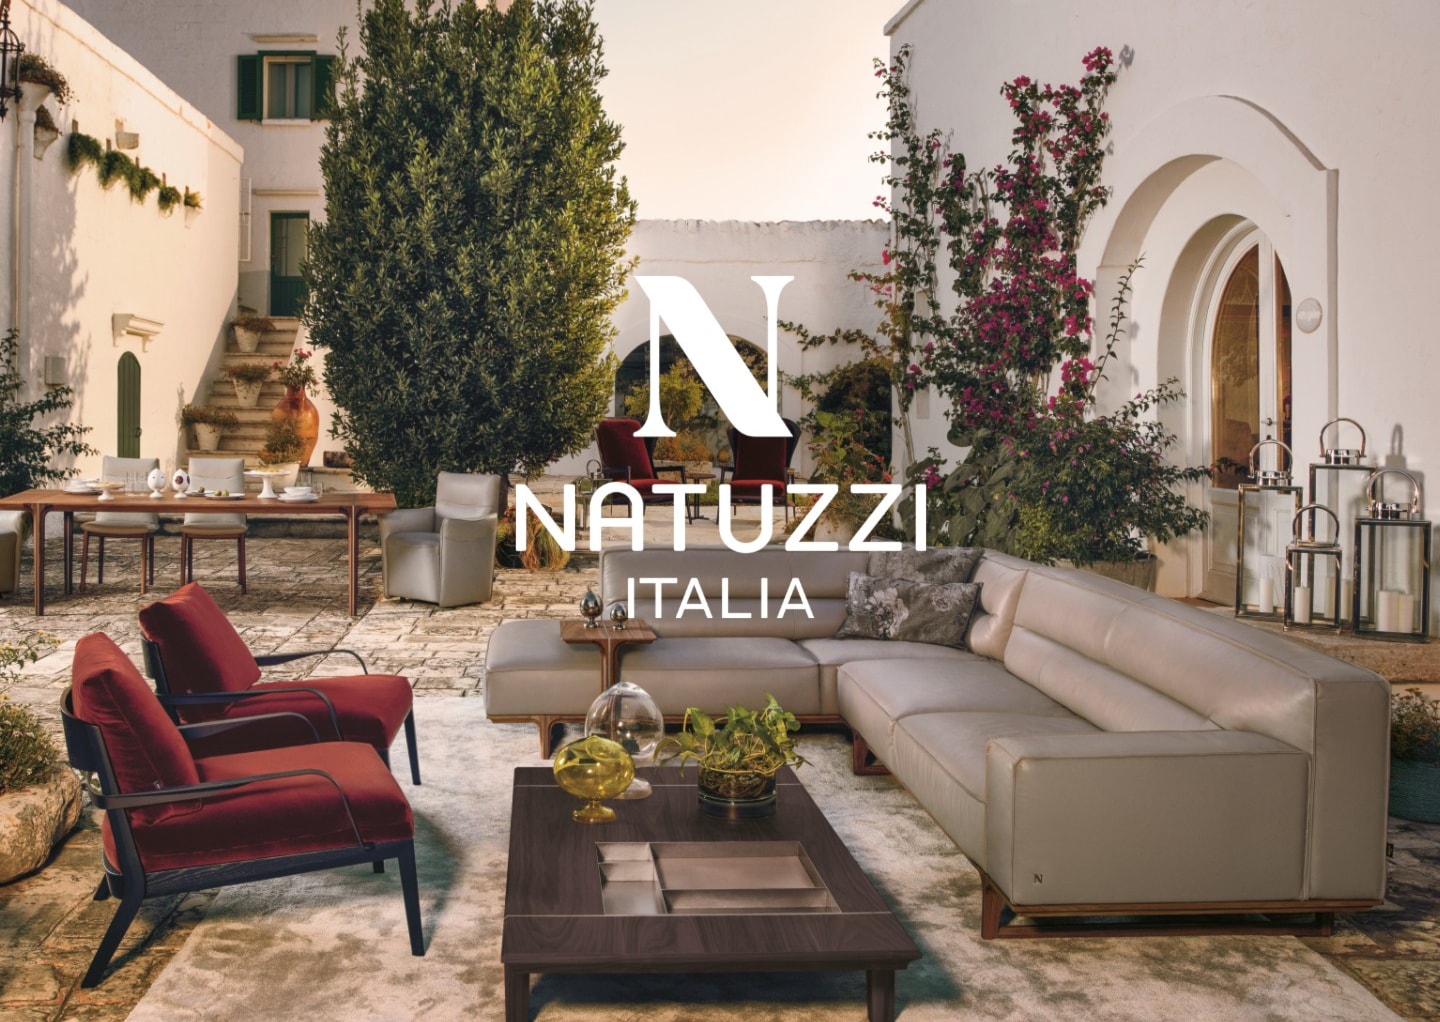 Natuzzi Italy